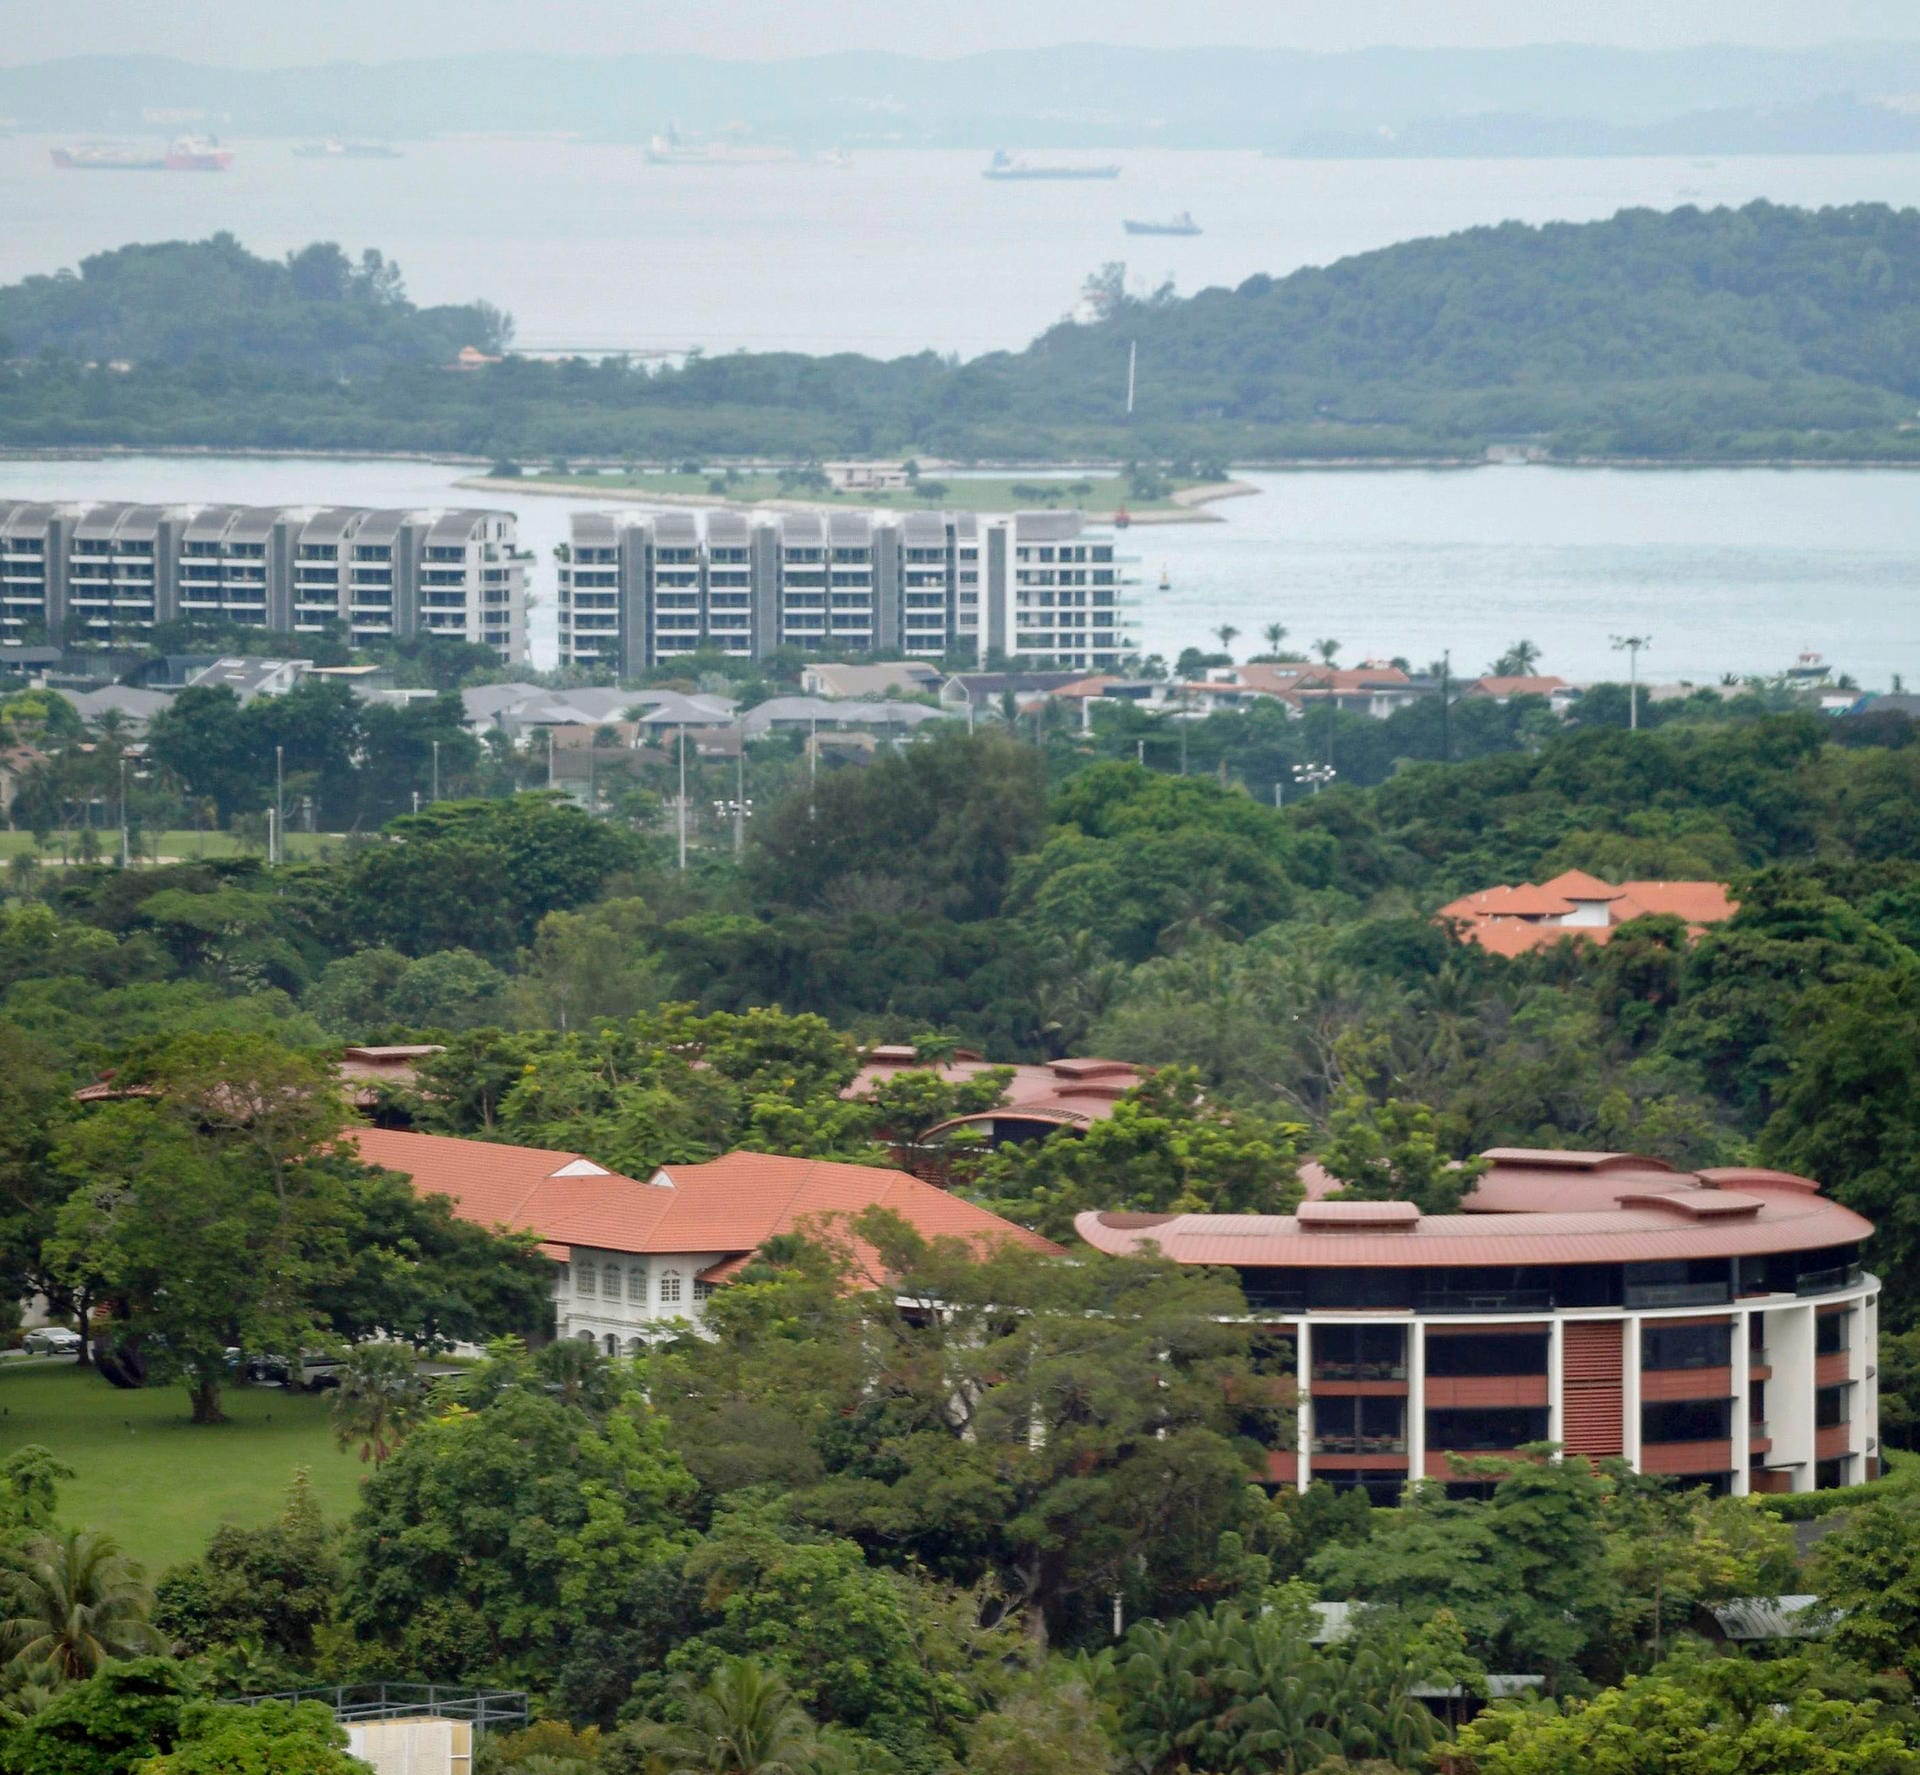 Das Capella Hotel (vorne) auf der Insel Sentosa: Das Gipfeltreffen von US-Präsident Trump und Nordkoreas Machthaber Kim Jong Un findet auf der Vergnügungsinsel Sentosa im Süden von Singapur statt.